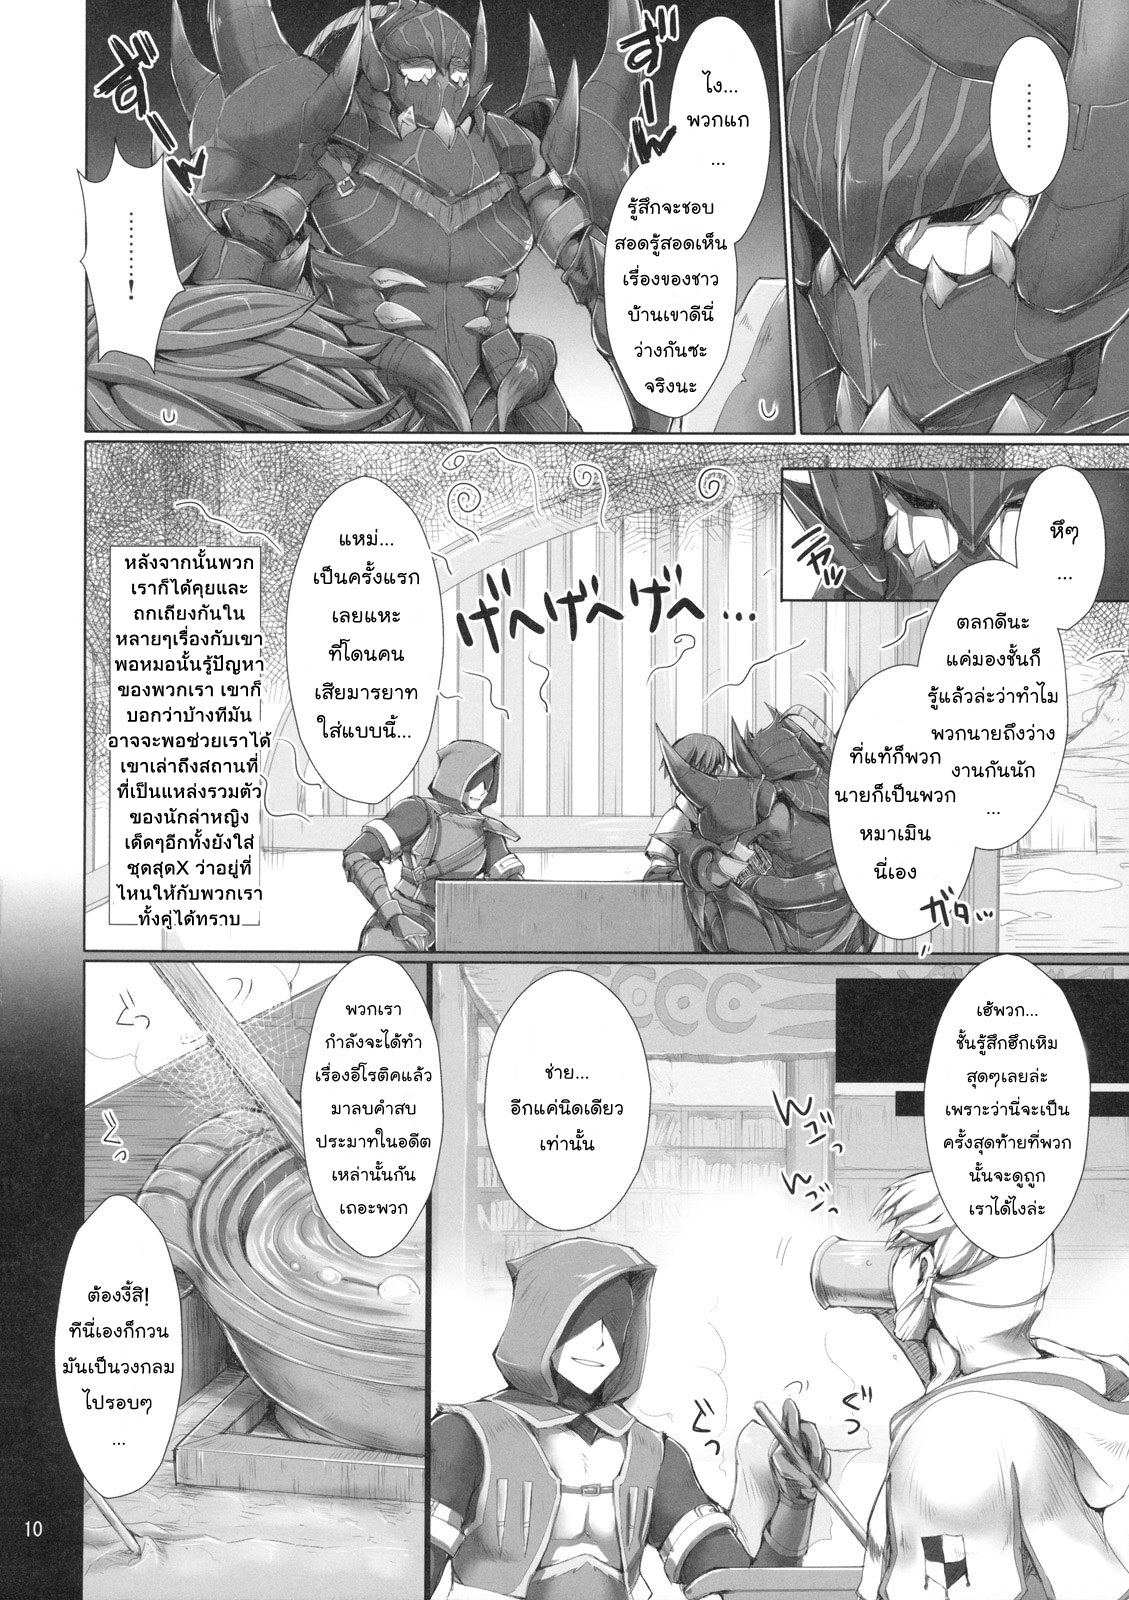 [UDON-YA (Kizuki Aruchu, ZAN)] Monhan no Erohon 7 | เกมล่าตูข้ากระหายหอย 7 (Monster Hunter) [Thai ภาษาไทย] {NatiSEELER} [Decensored] [うどんや (鬼月あるちゅ、ZAN)] もんはんのえろほん 7 (モンスターハンター) [タイ翻訳] [無修正]